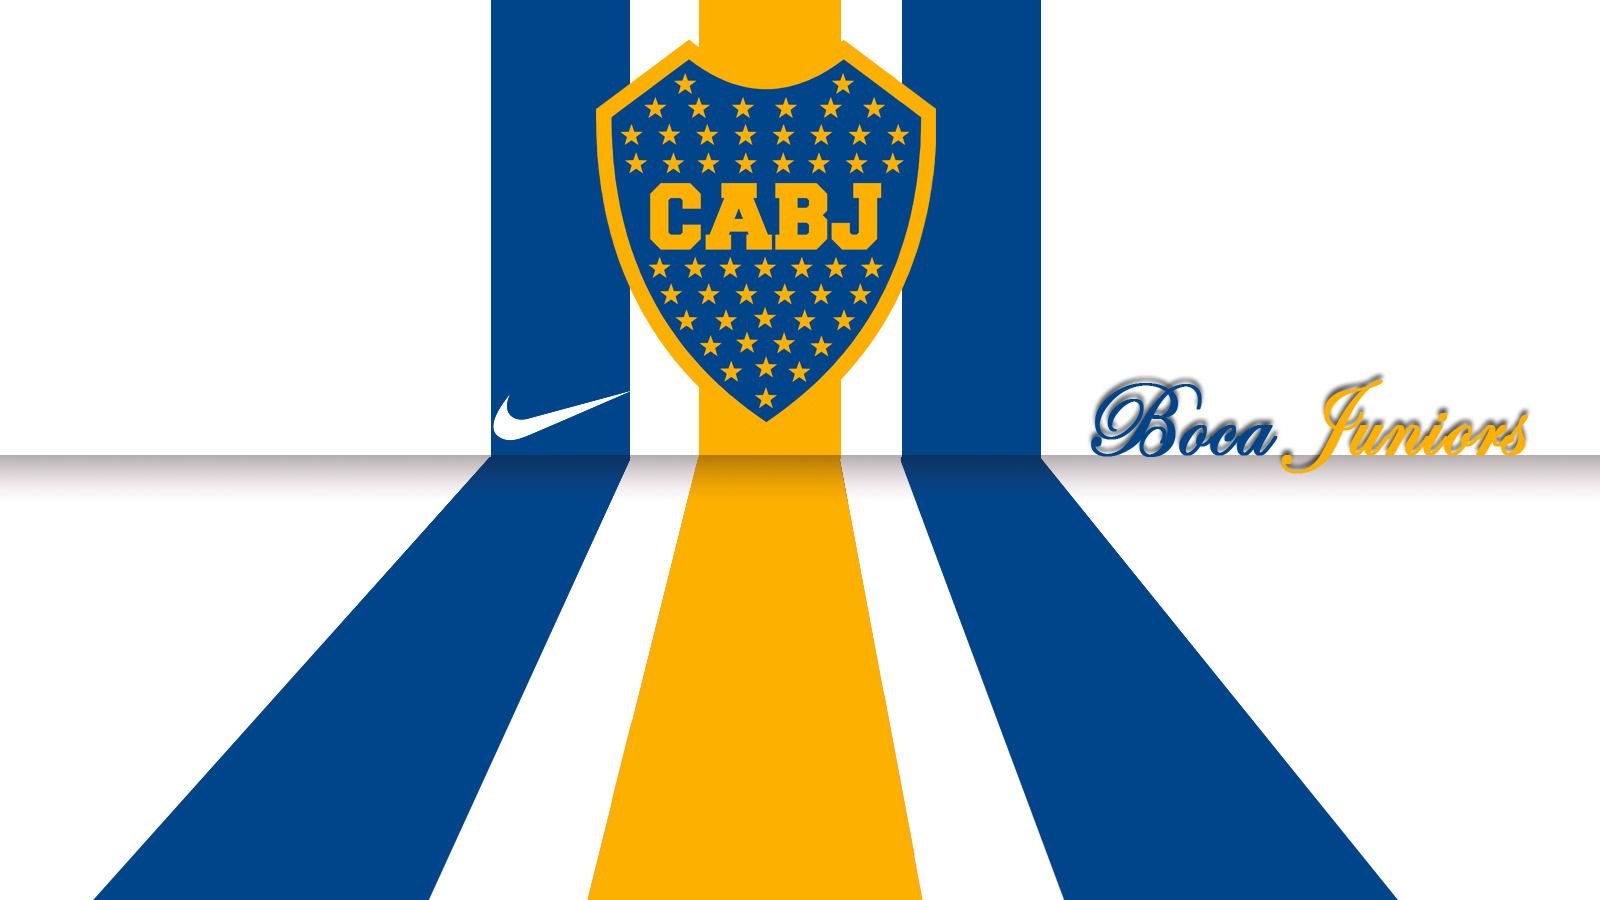 Boca Juniors Hd Wallpapers - Imagenes Boca Juniors Hd , HD Wallpaper & Backgrounds